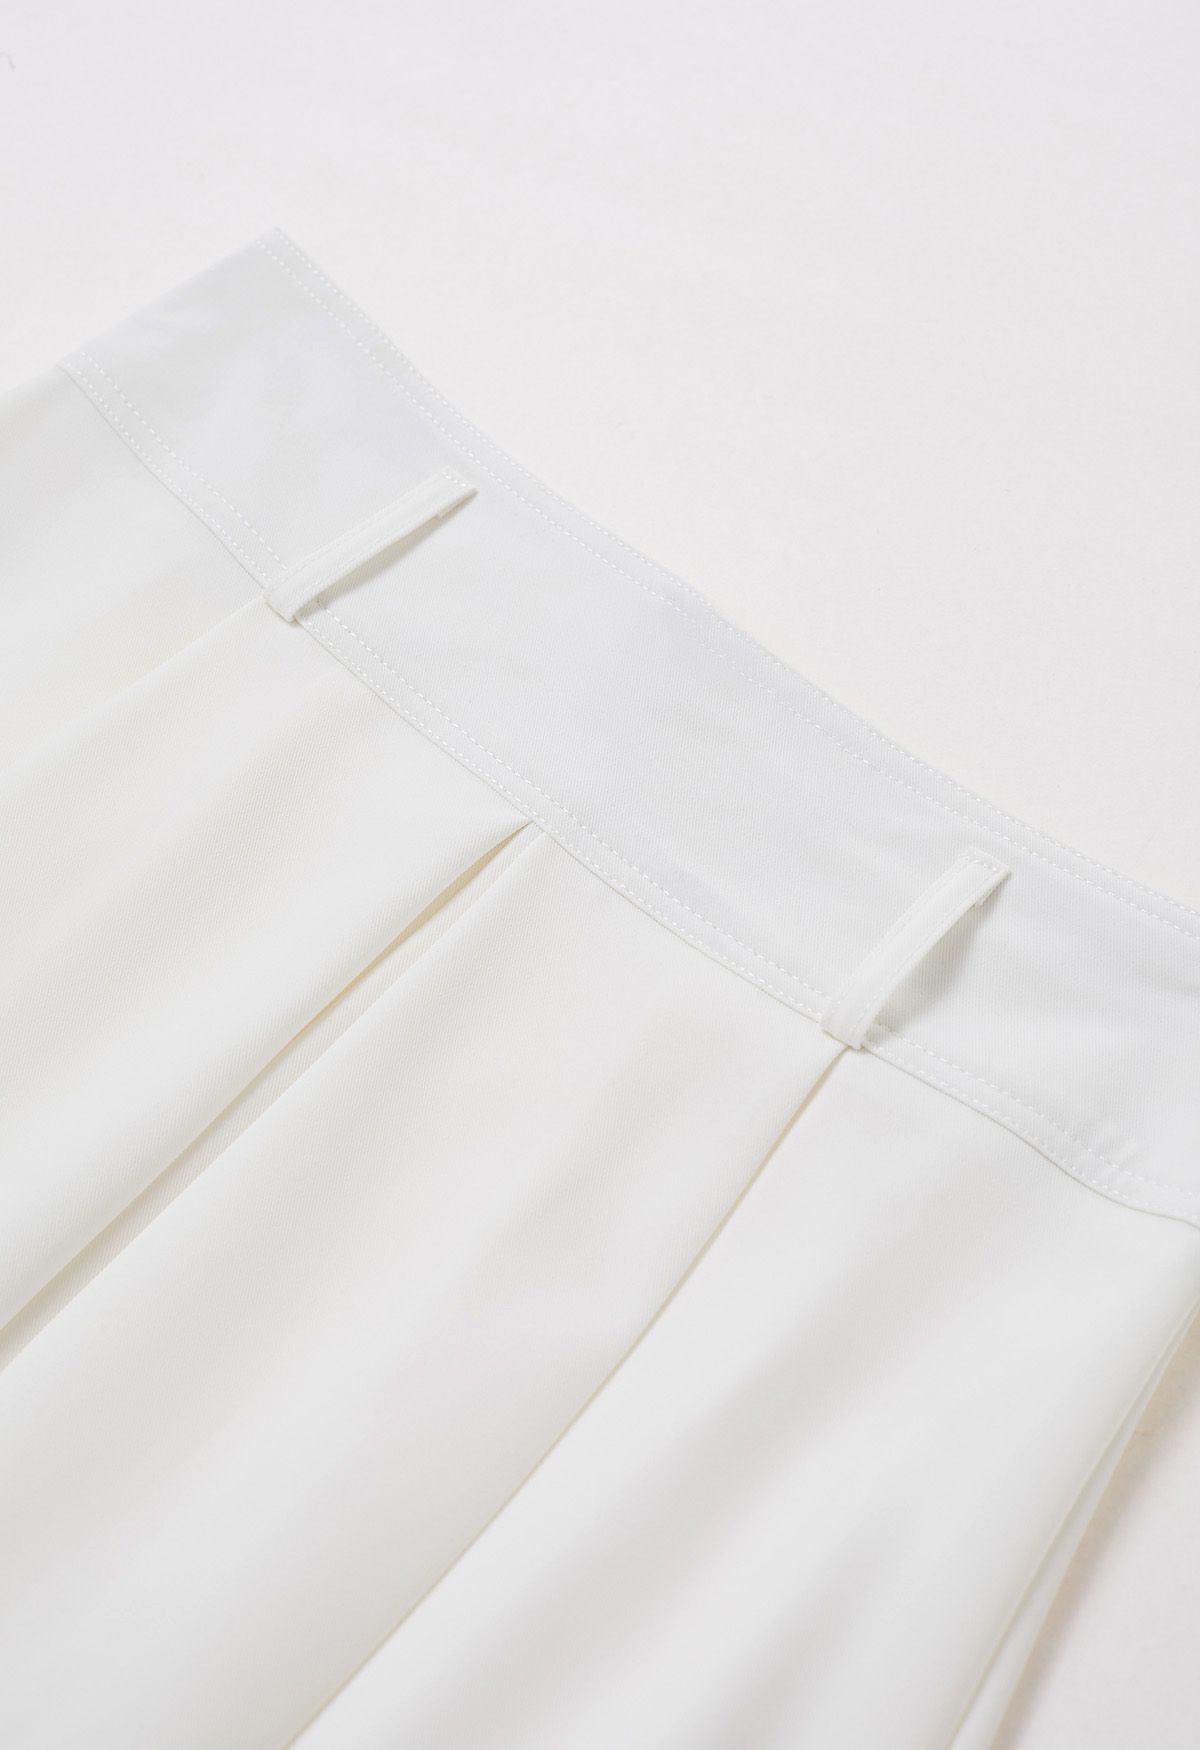 Falda midi con cinturón plisado en blanco Refined